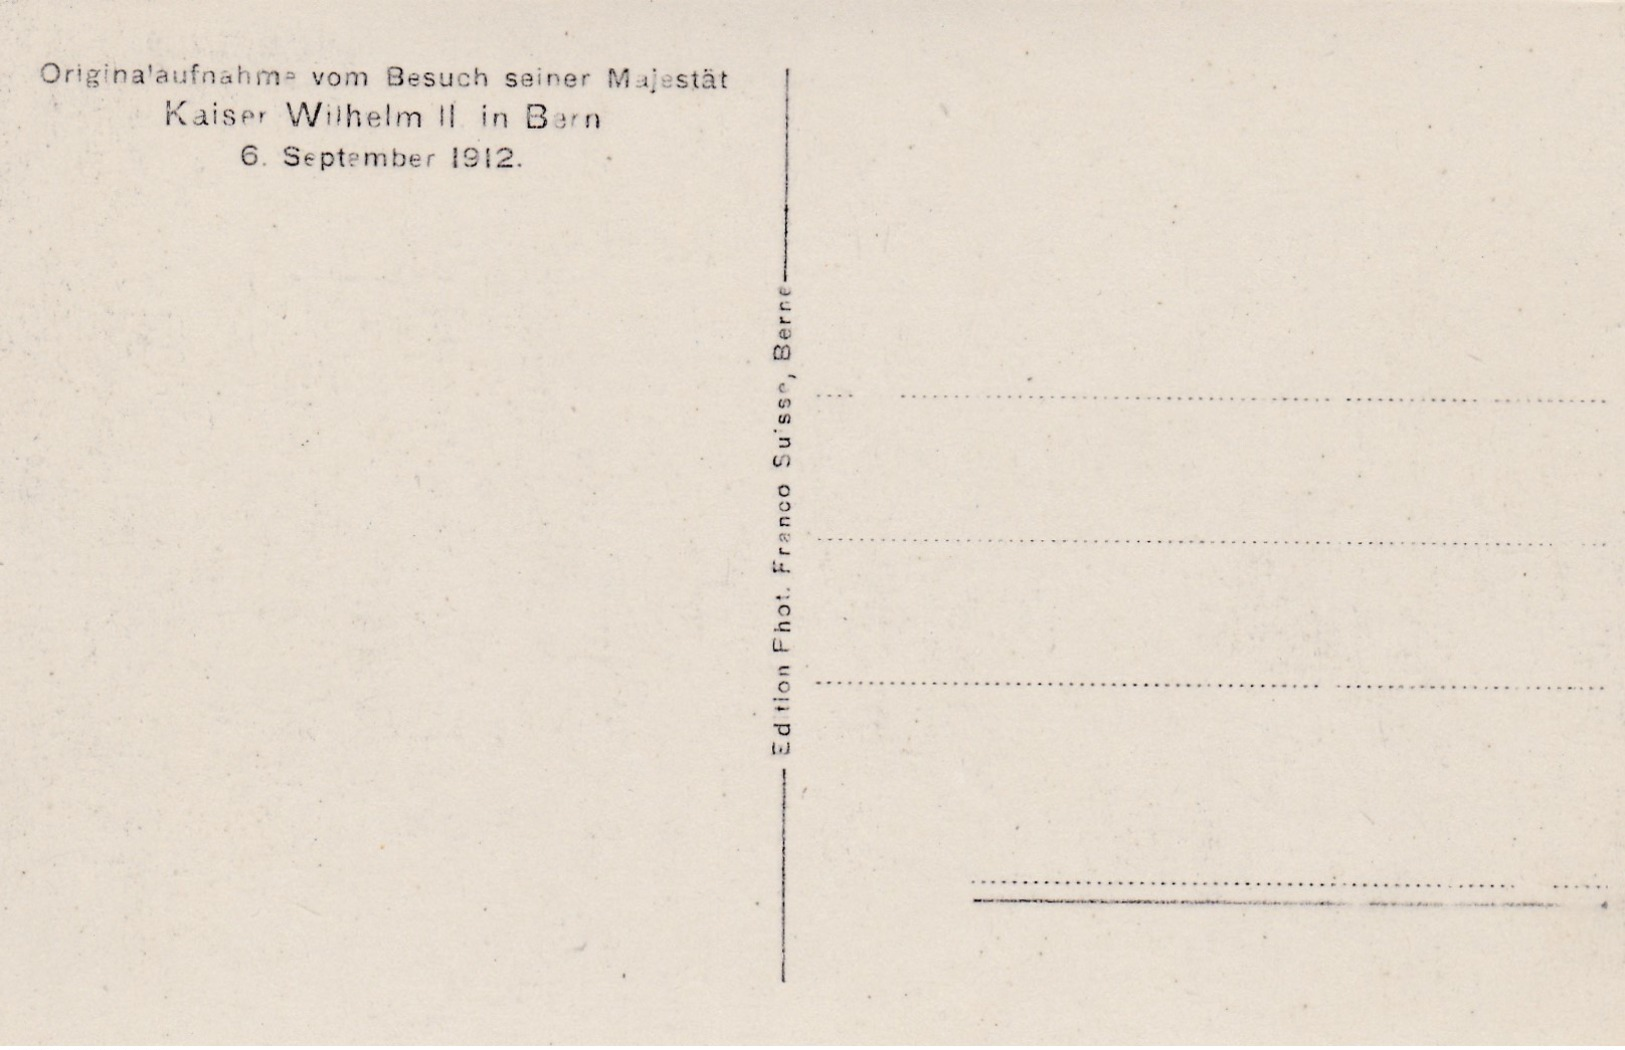 Old Post Card Of Origiaufnahme Vom Besuch Seiner Majestat,Kaiser Wilhelm Ll In Bern,1912,S61. - Freiburg I. Br.